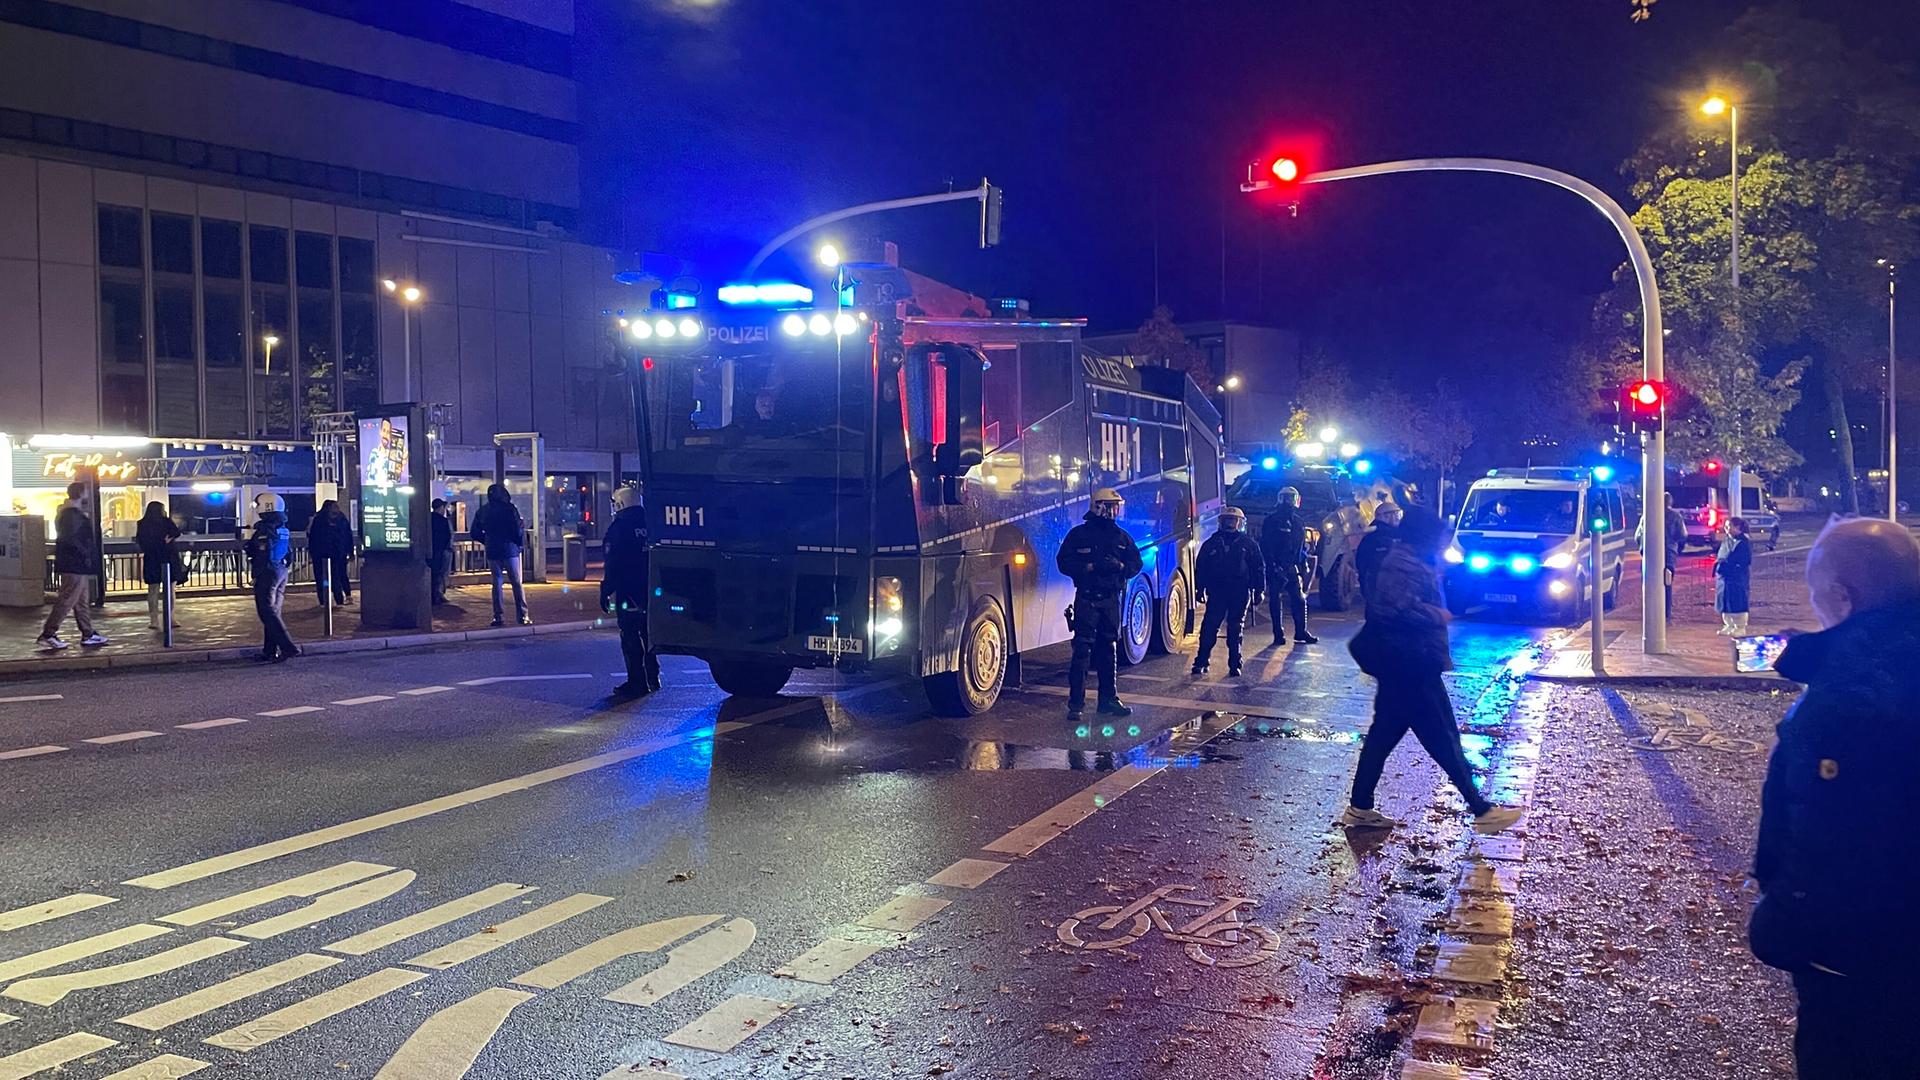 Einsatzkräfte der Polizei stehen neben Einsatzfahrzeugen in Hamburg Harburg. Es ist dunkel draußen und die rote Ampel der Straße und die Signallichter der Einsatzfahrzeuge leuchten grell.